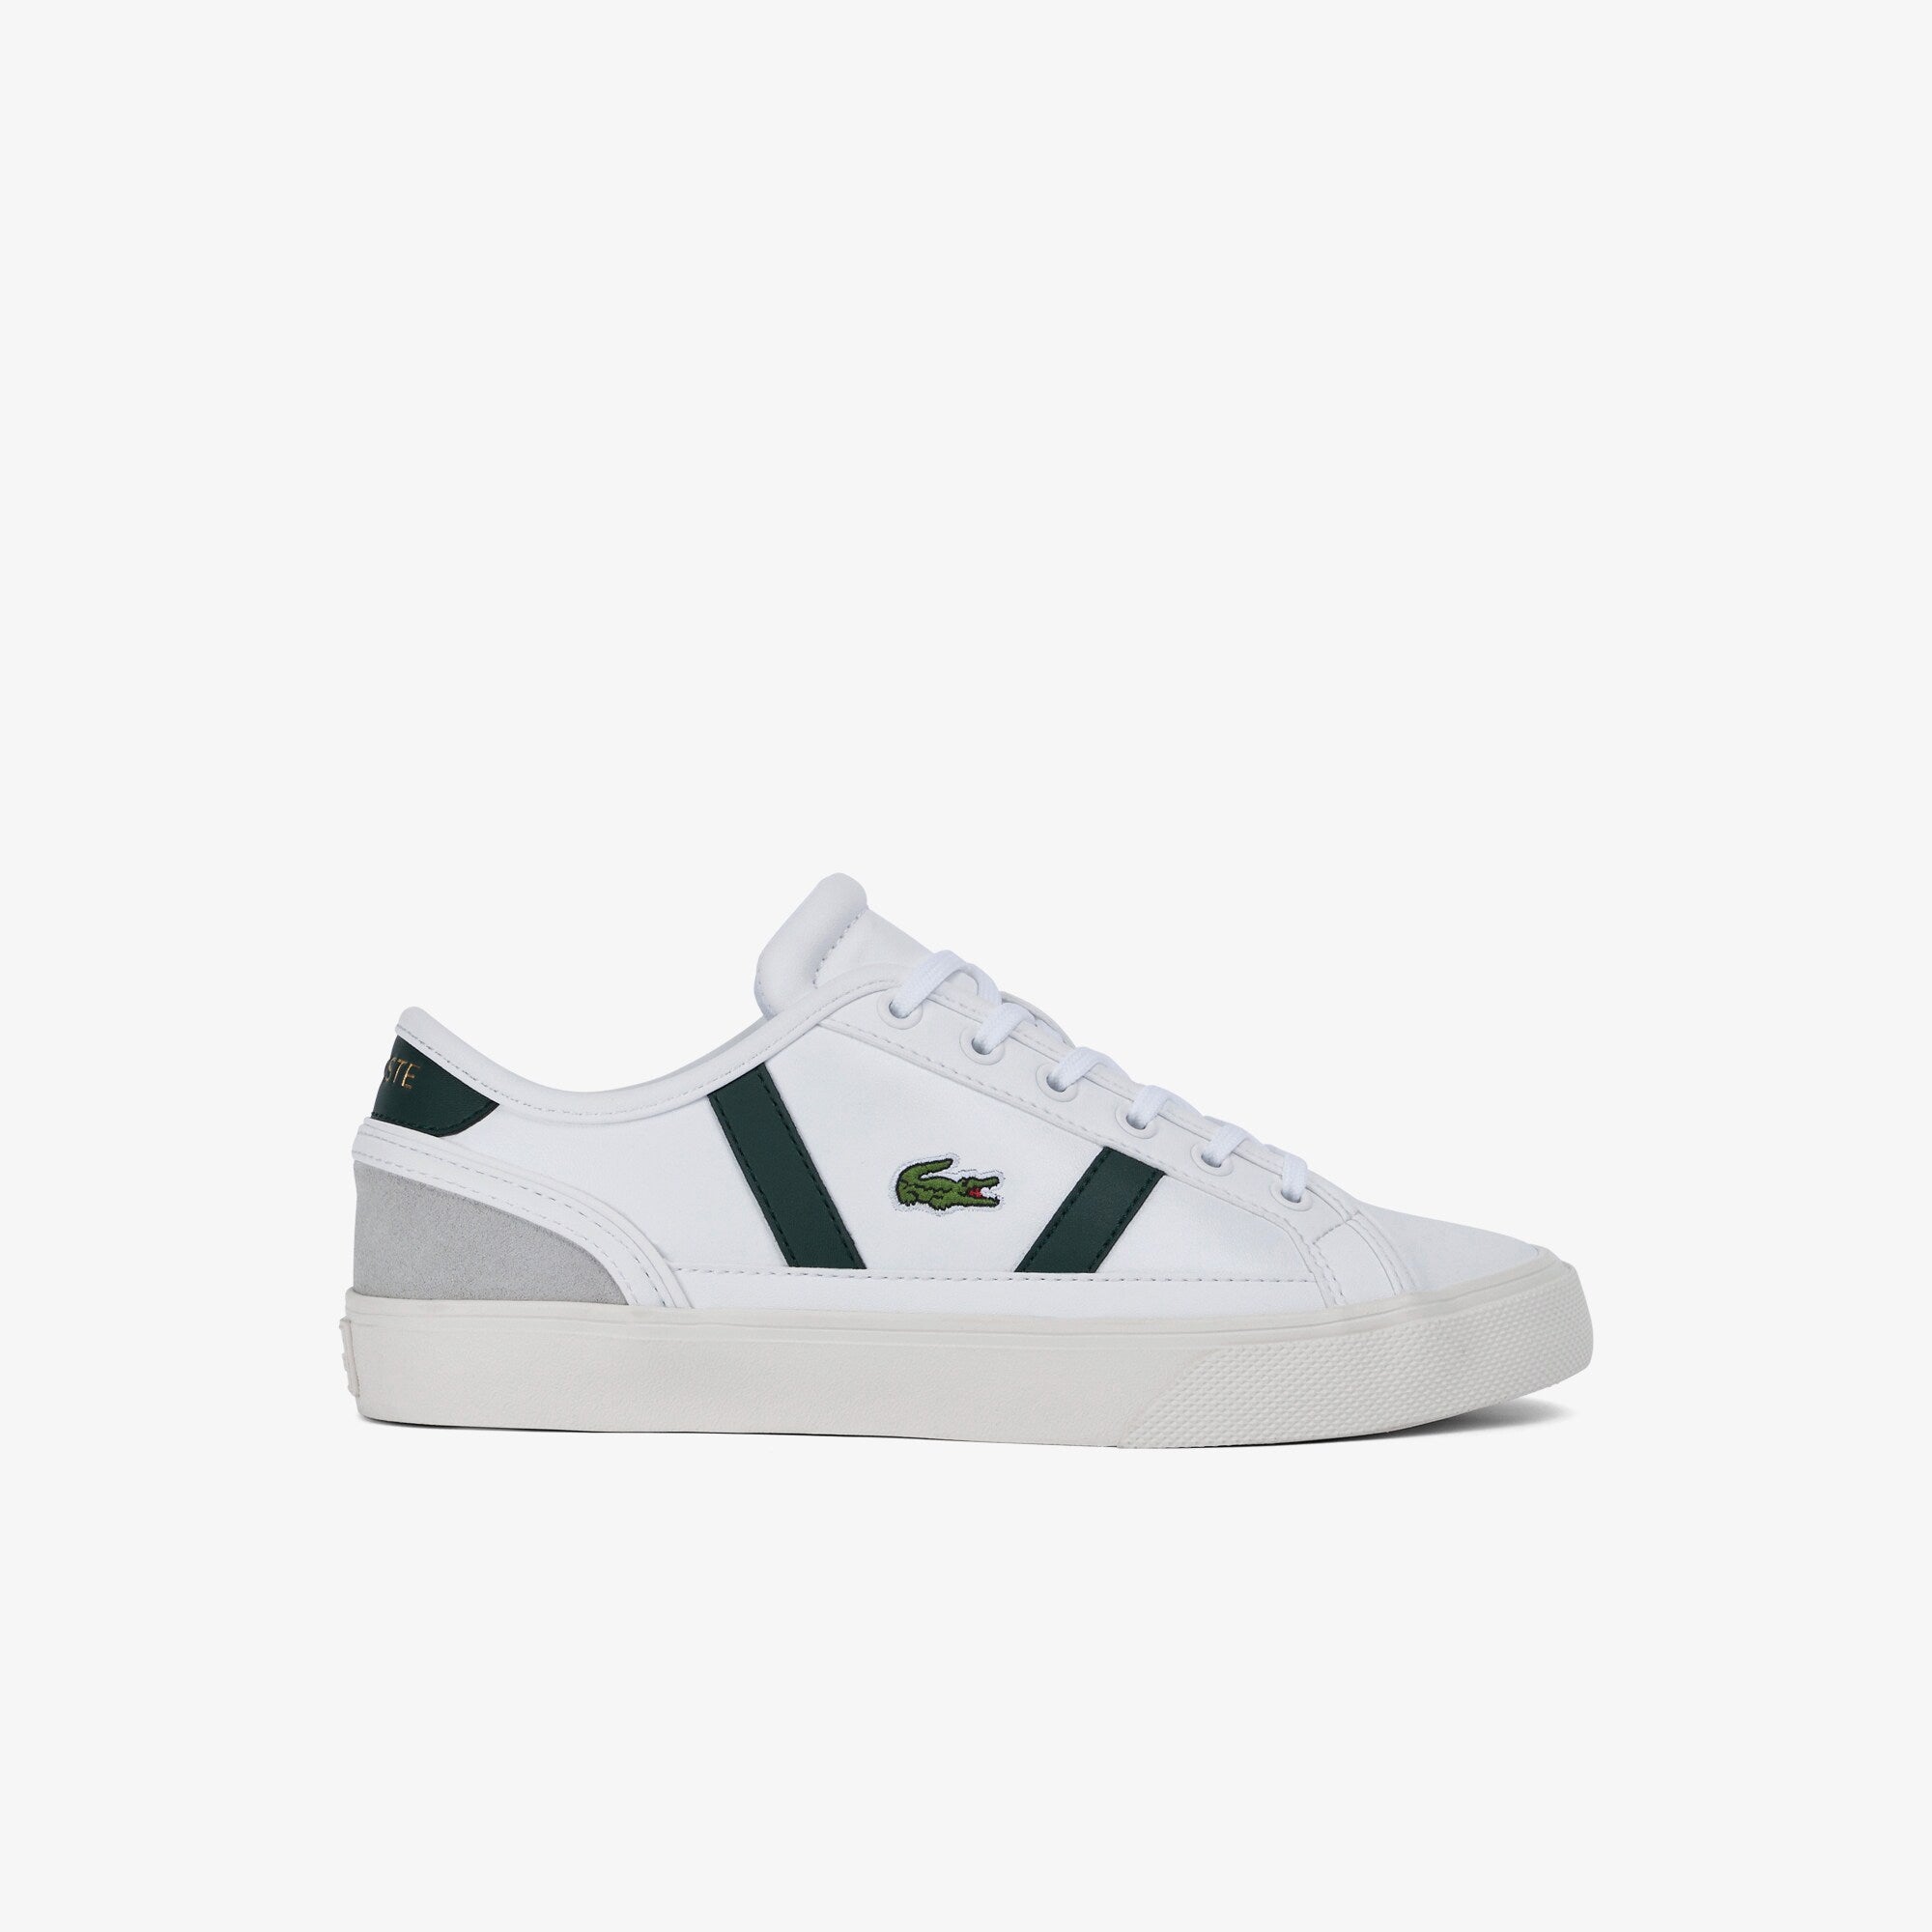 Lacoste - Sideline Pro 222 1 CFA Shoe - White/Dark Green